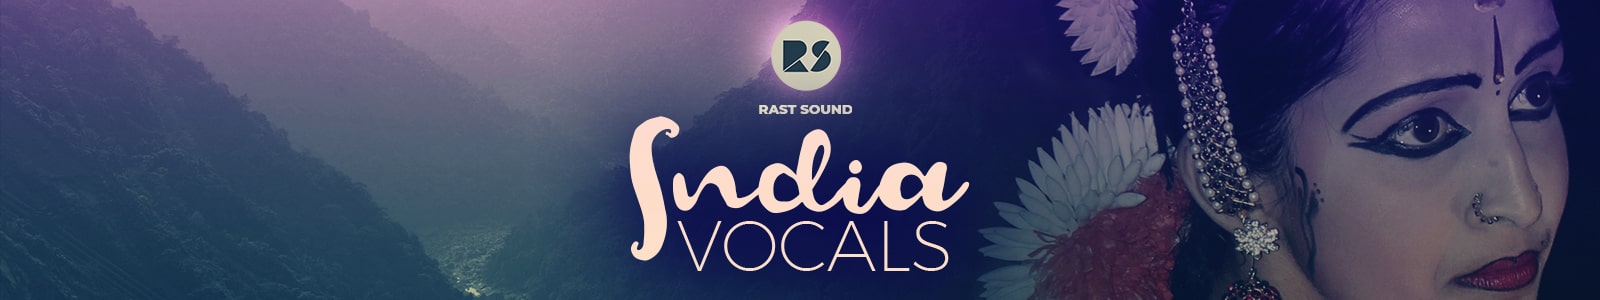 india vocals by rast sound